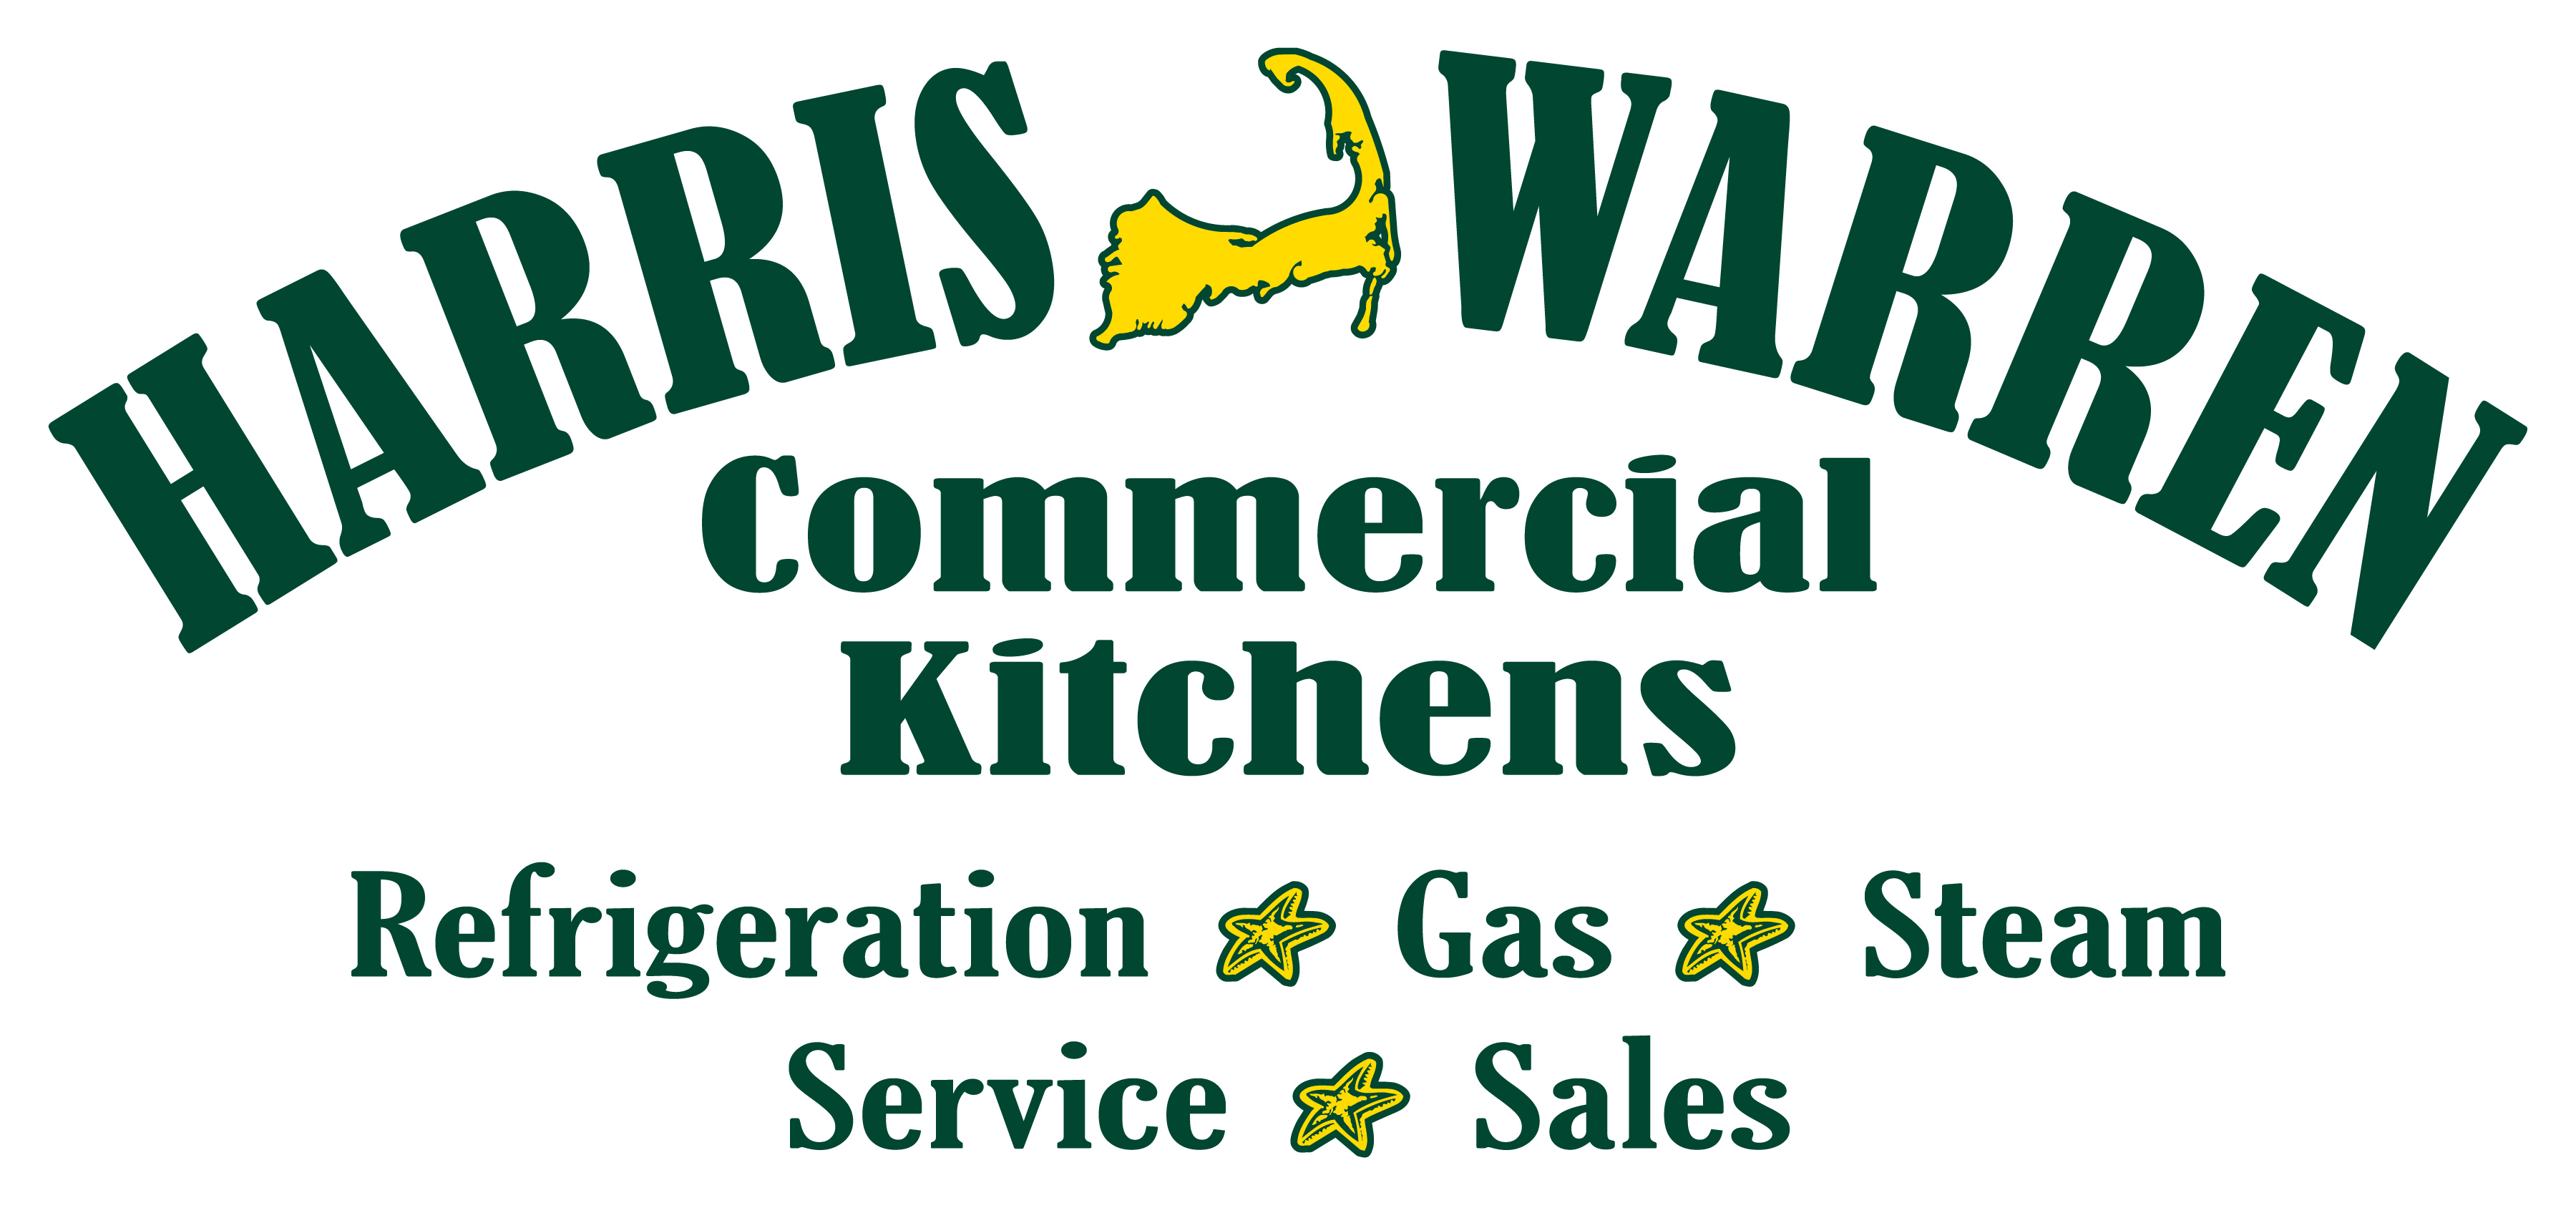 Harris Warren Commercial Kitchens